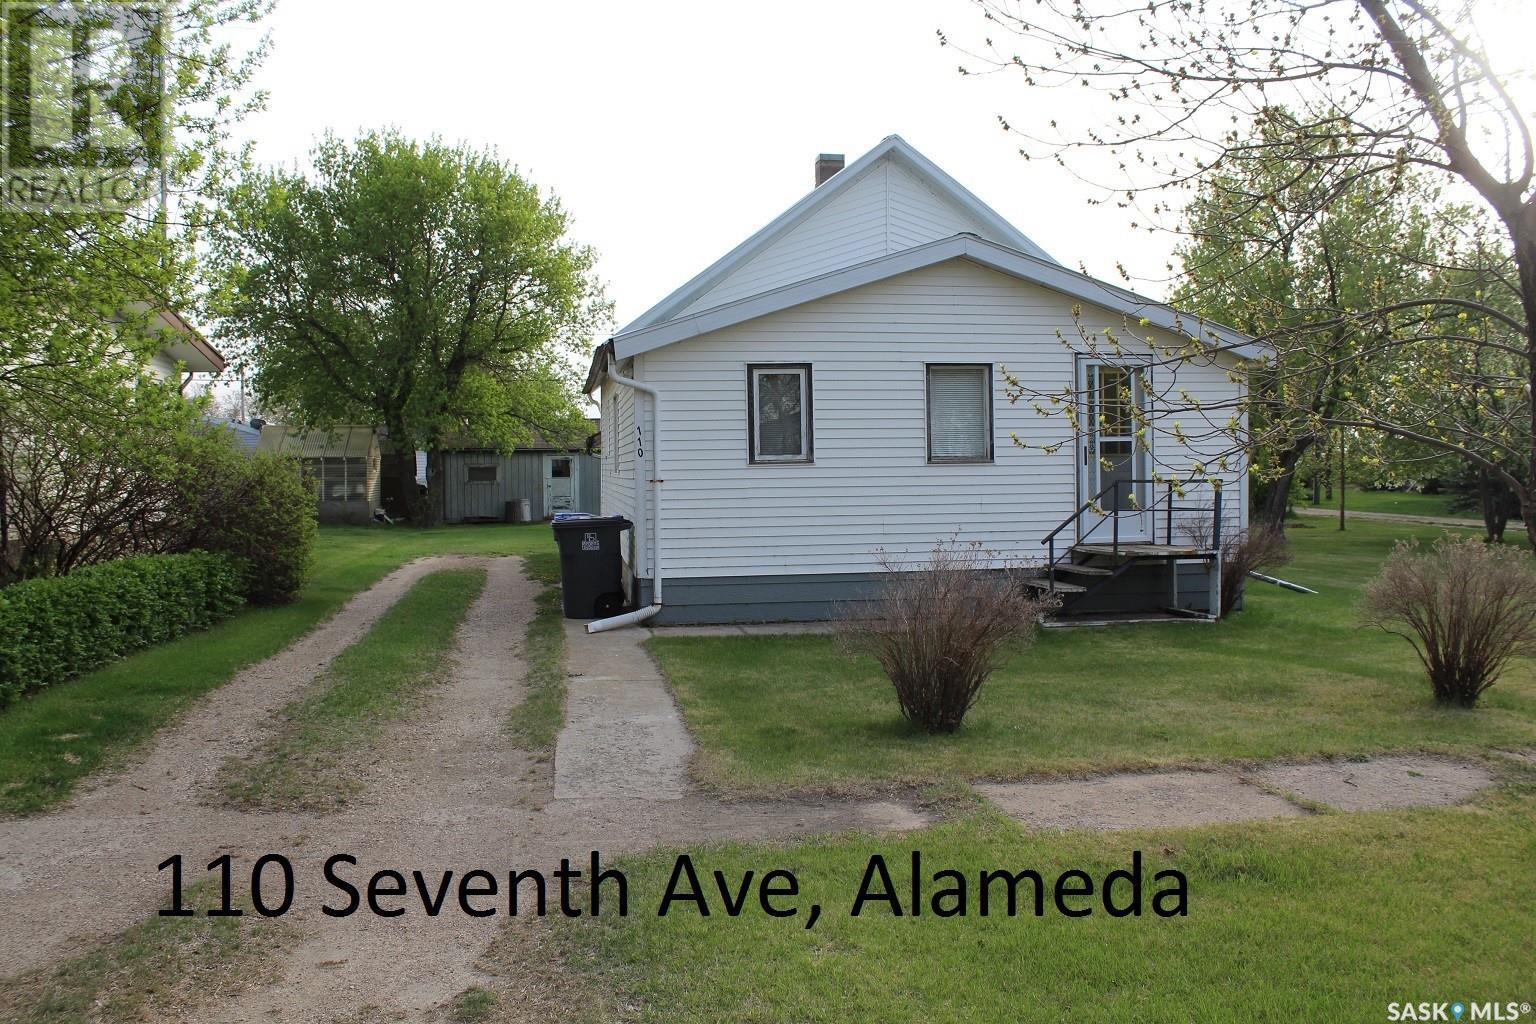 110 7th AVENUE located in Alameda, Saskatchewan